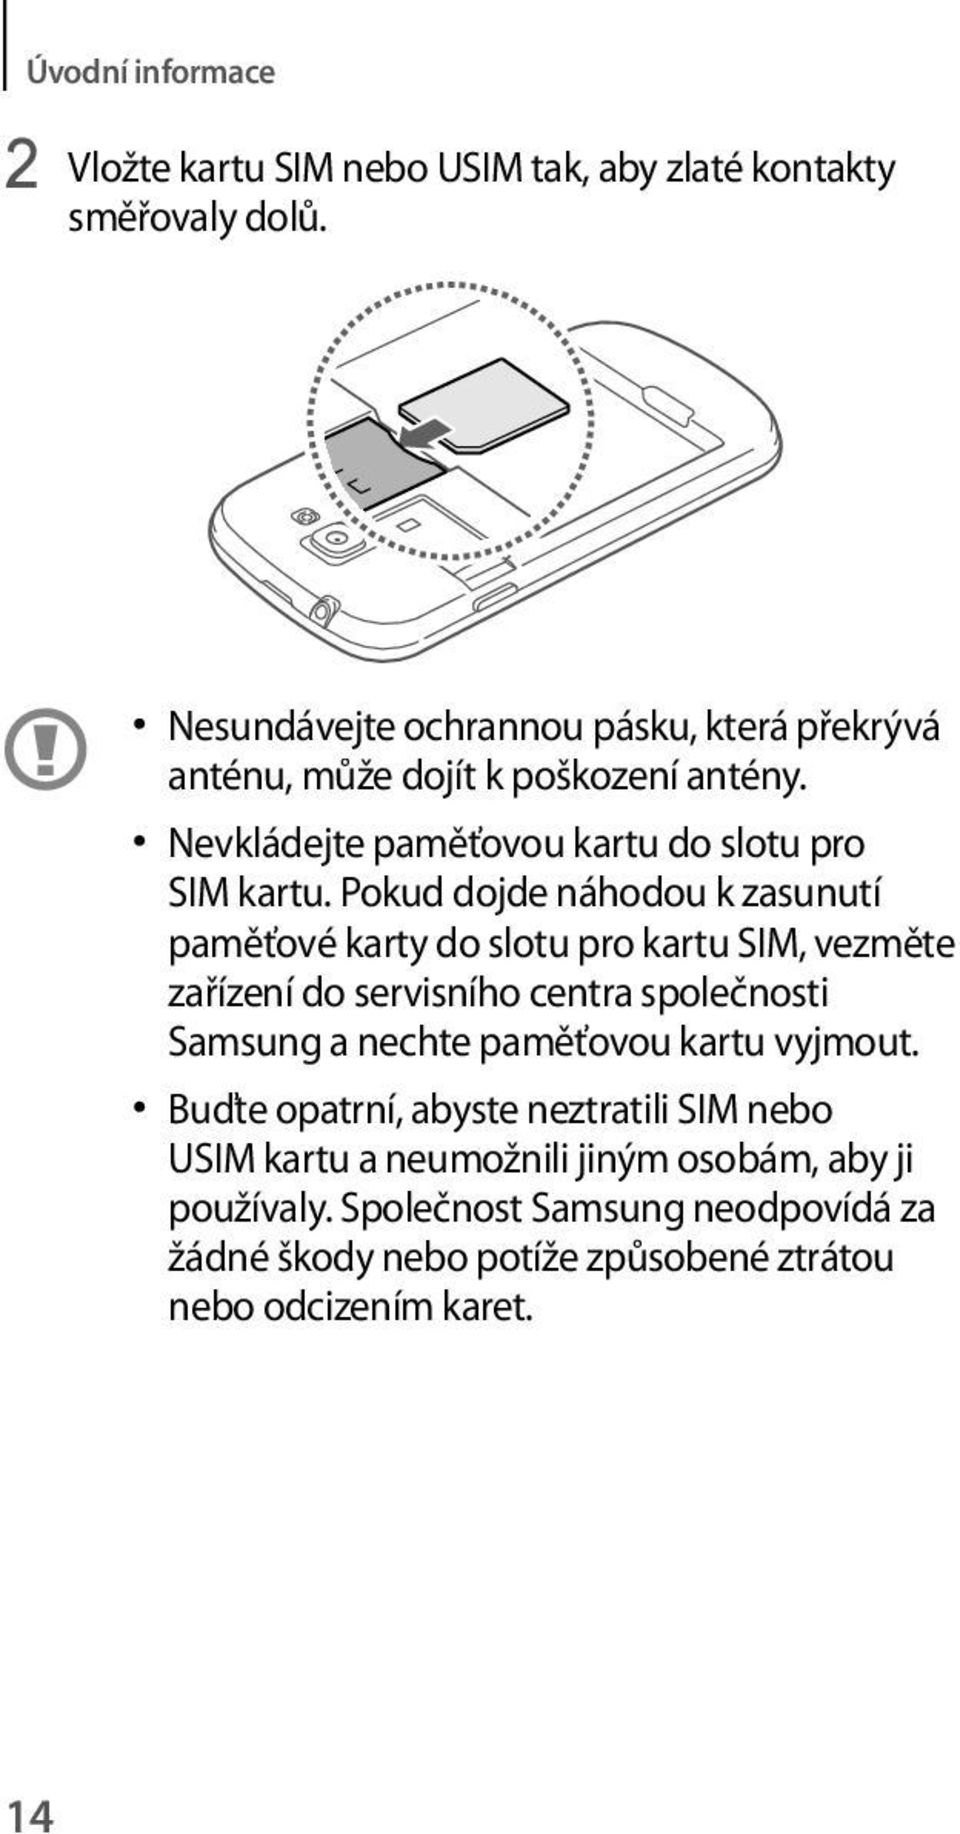 Pokud dojde náhodou k zasunutí paměťové karty do slotu pro kartu SIM, vezměte zařízení do servisního centra společnosti Samsung a nechte